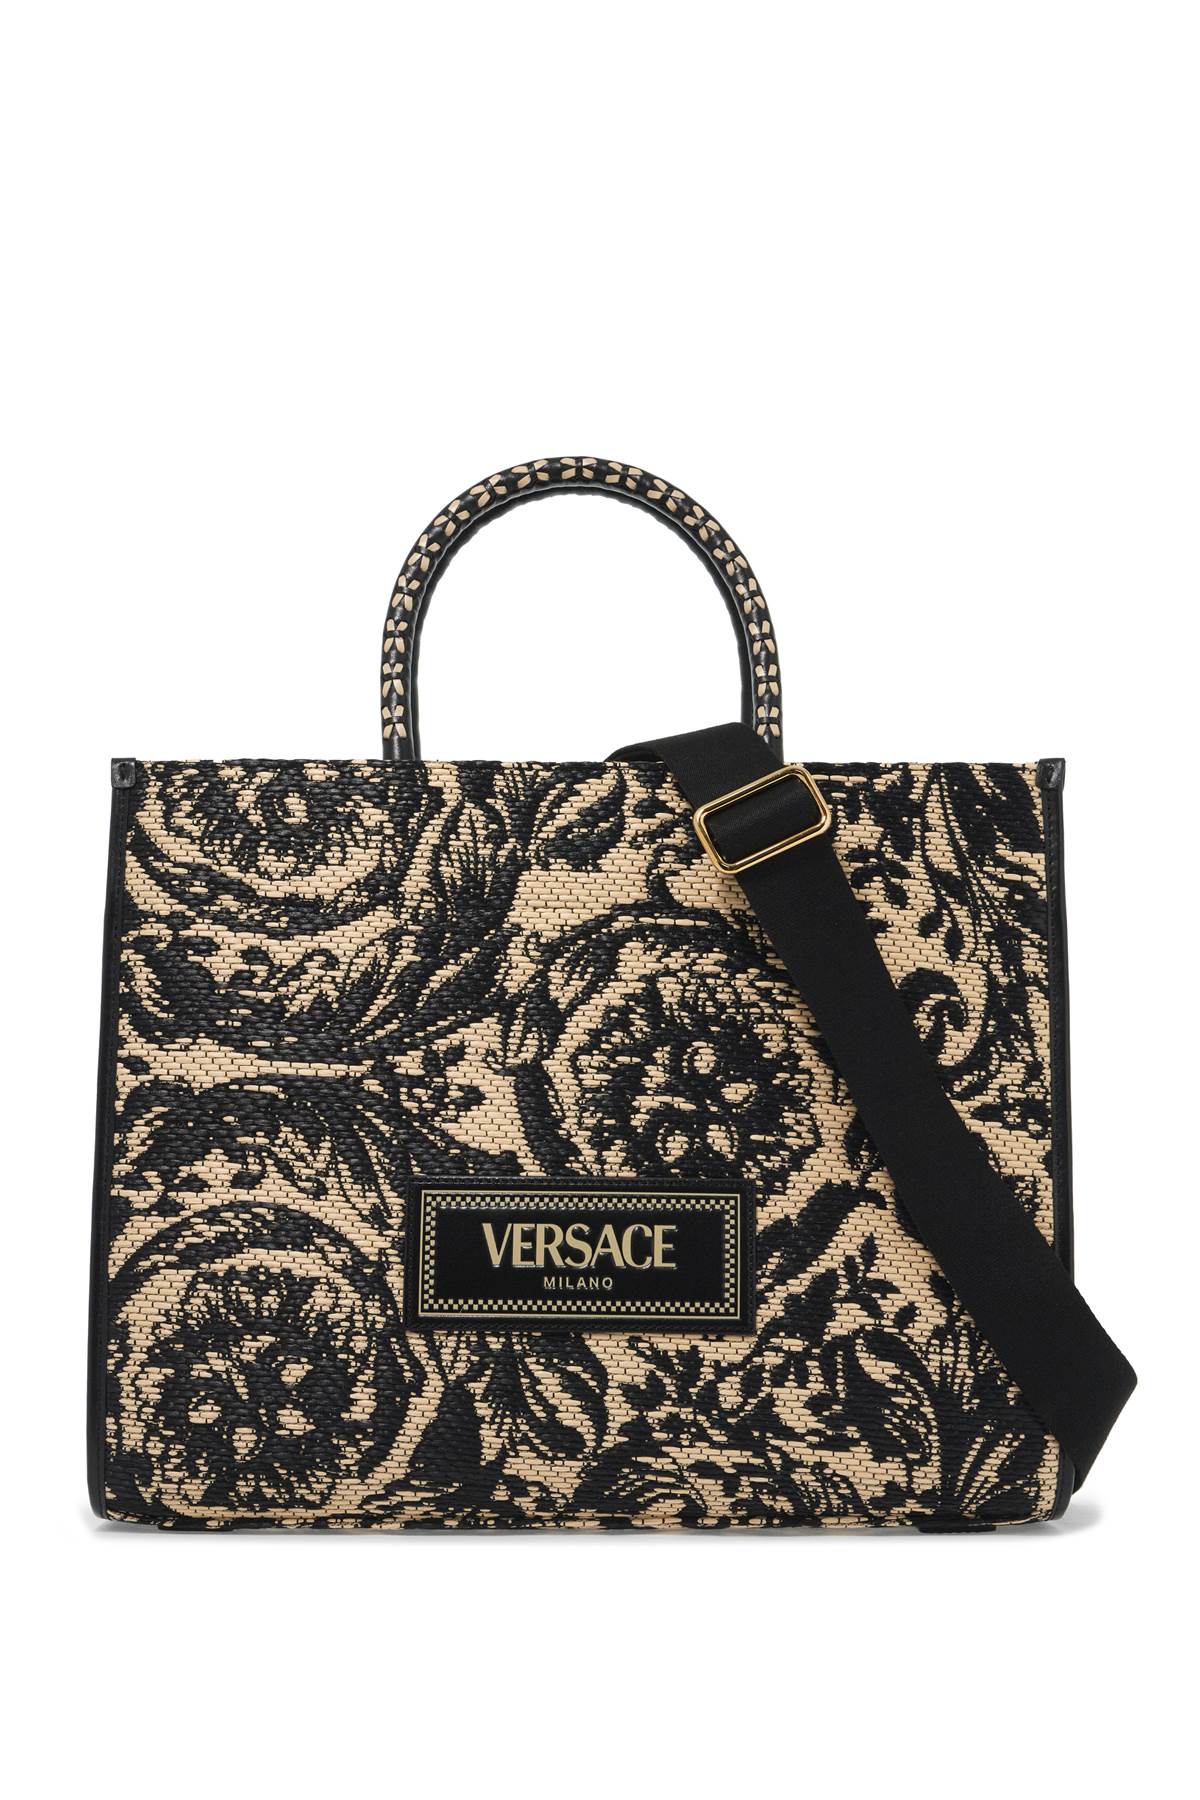 Versace VERSACE medium athena barocco tote bag in raff